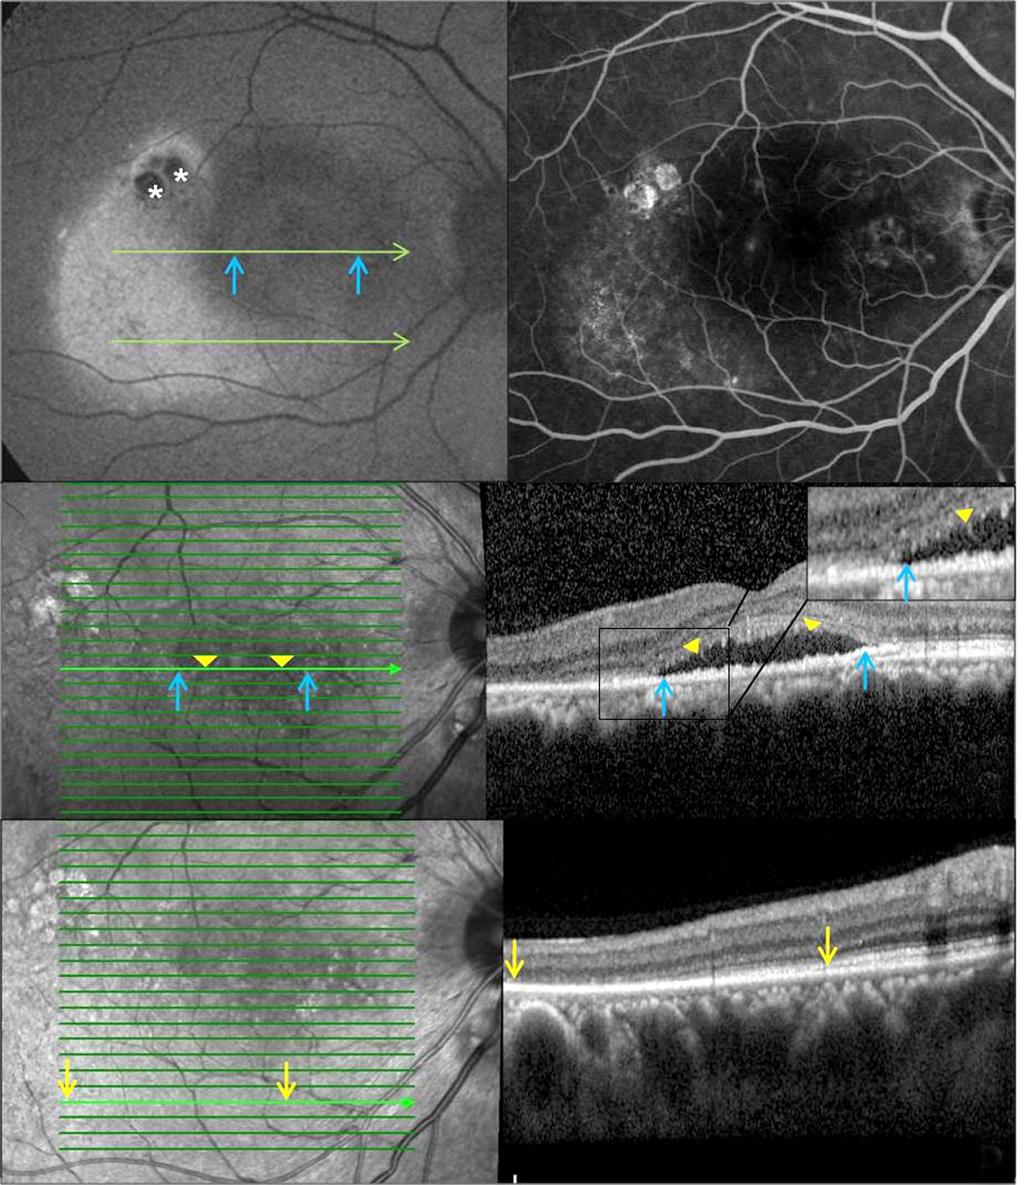 - 오인석 장지혜 : 만성중심장액맥락망막병증에서의망막외층변성 - A B C D Figure 5. Patient with 12-month history of central serous chorioretinopathy in the right eye after focal laser photocoagulation (Case 9).